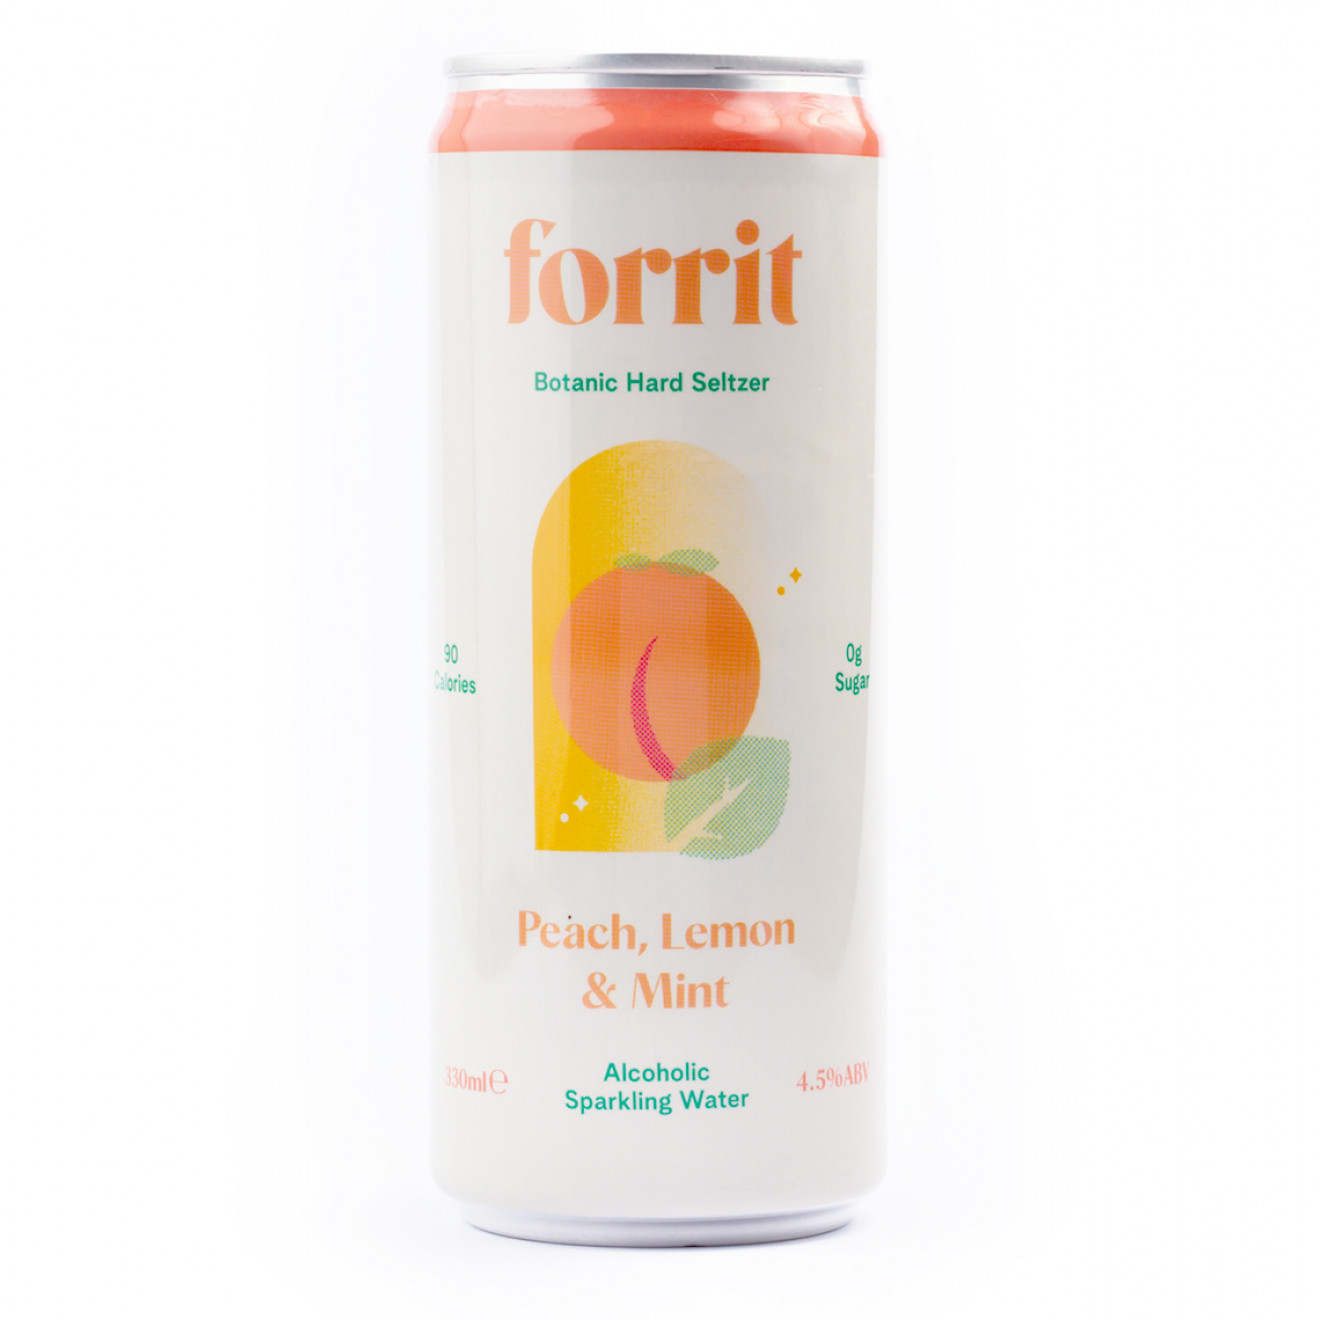 Forrit - Peach, Lemon & Mint - 330ml